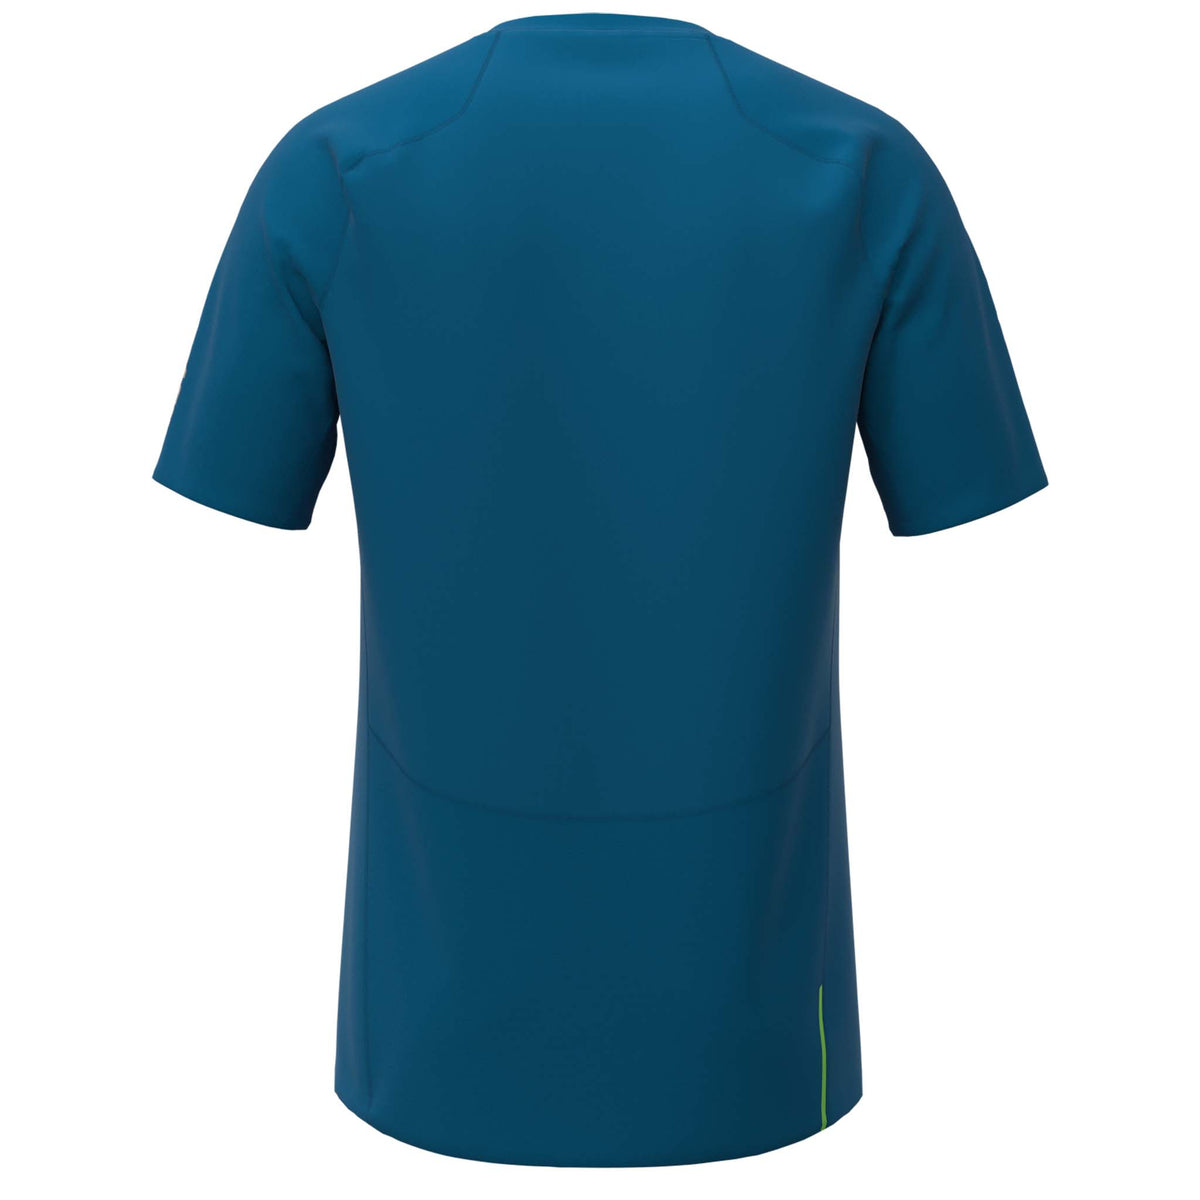 Inov-8 Base Elite Short Sleeve t-shirt de course a pied manches courtes bleu homme dos